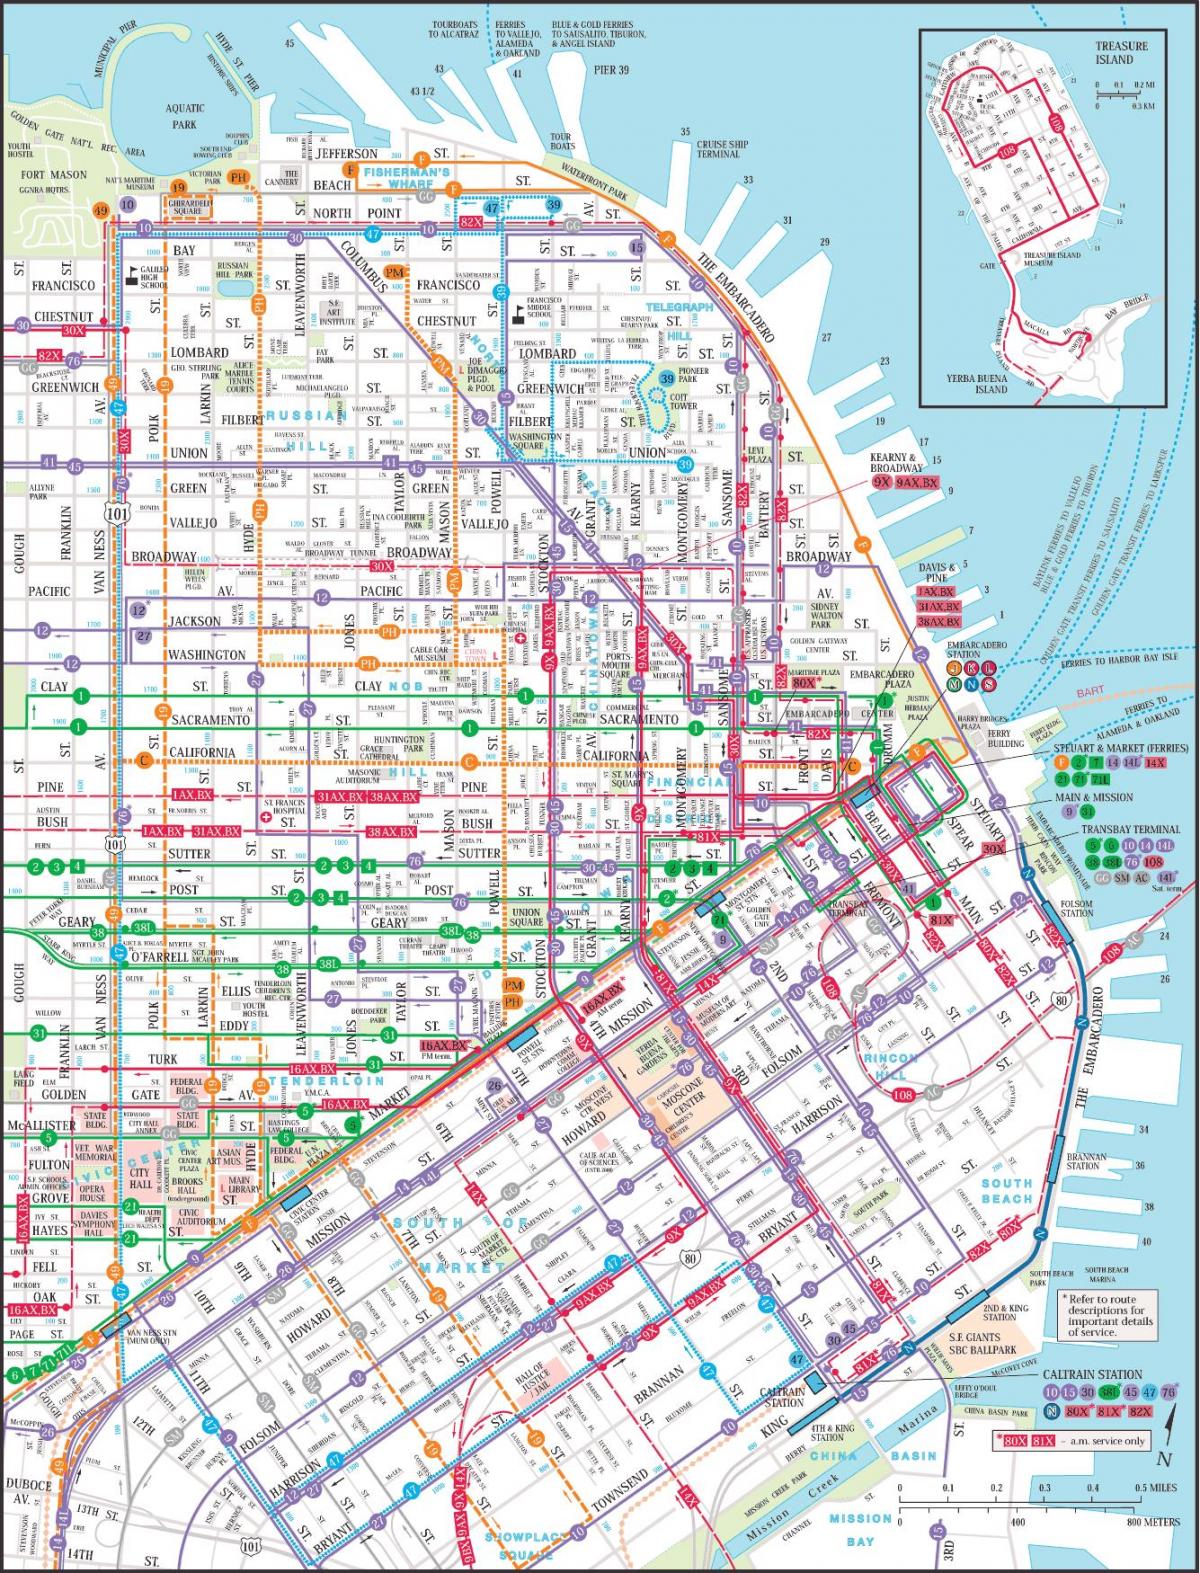 San Francisco garraio publikoaren mapa